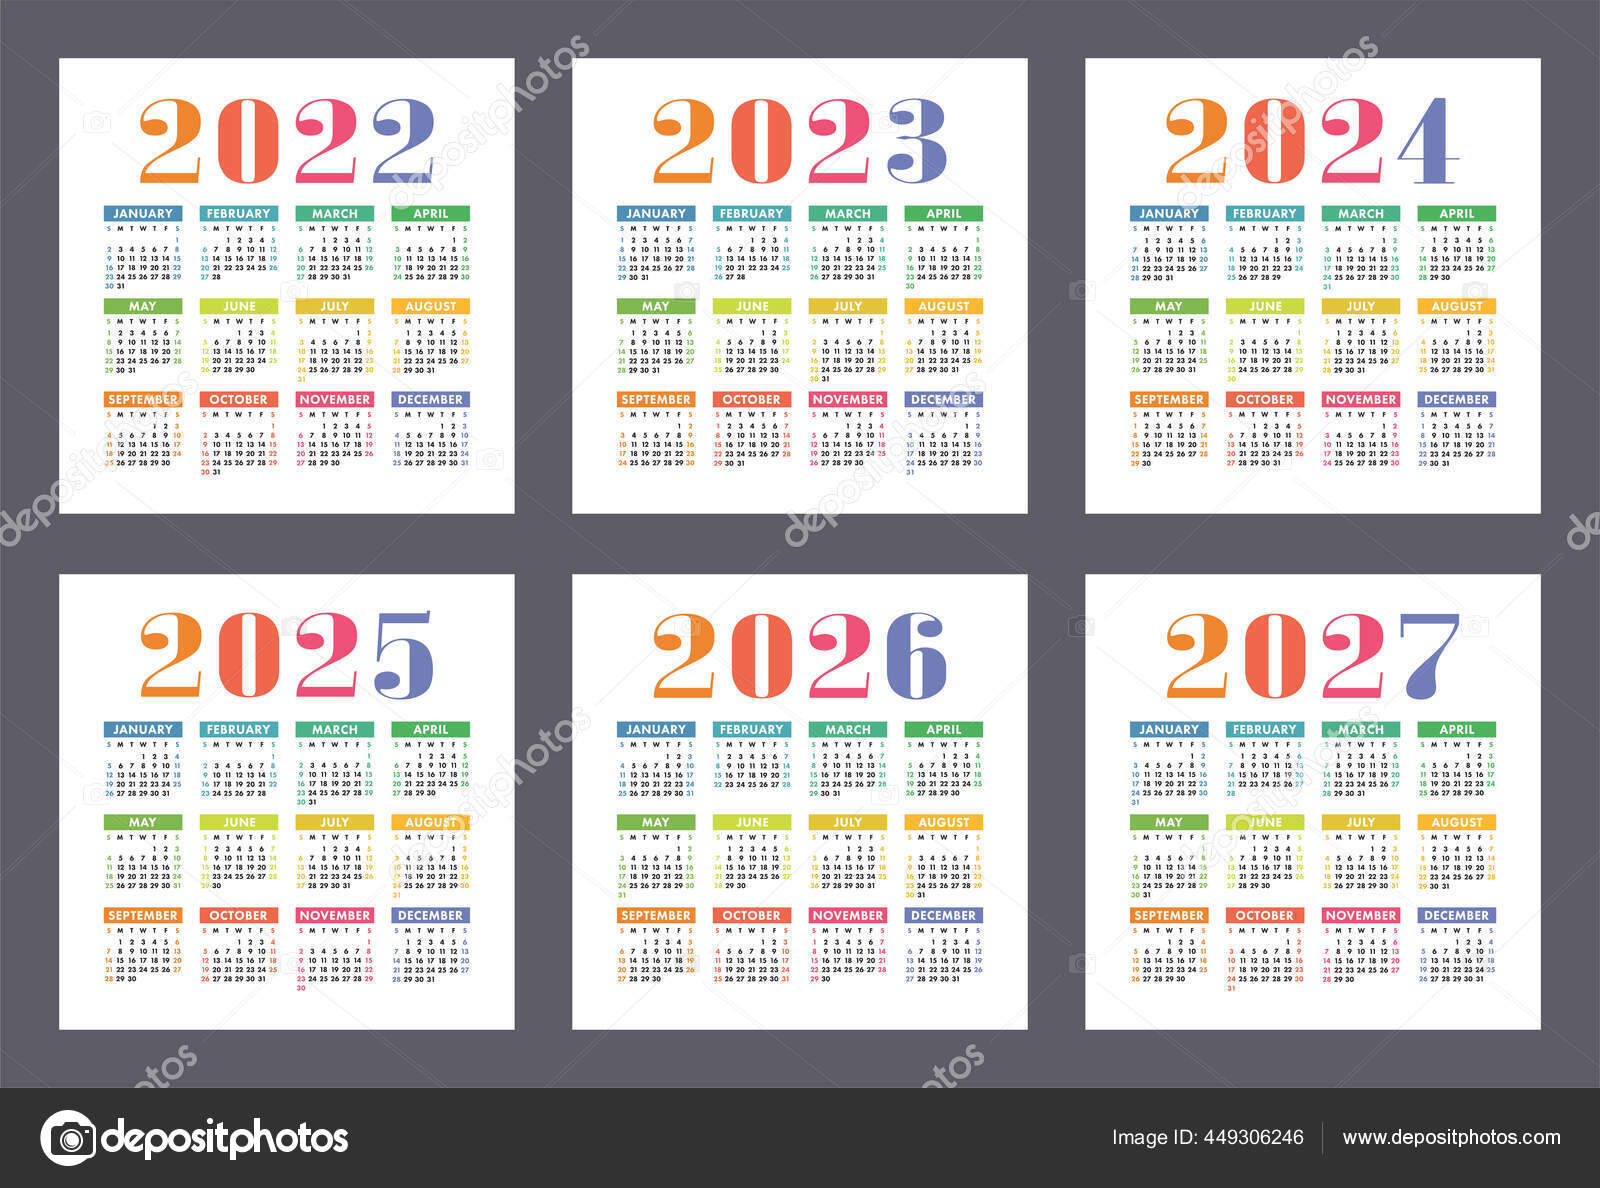 2026 по месяцам. Календарь 2022 2023 2024 2025. Календарь 2022-2023. Календарь на 2022-2025 год. Календарная сетка 2025.